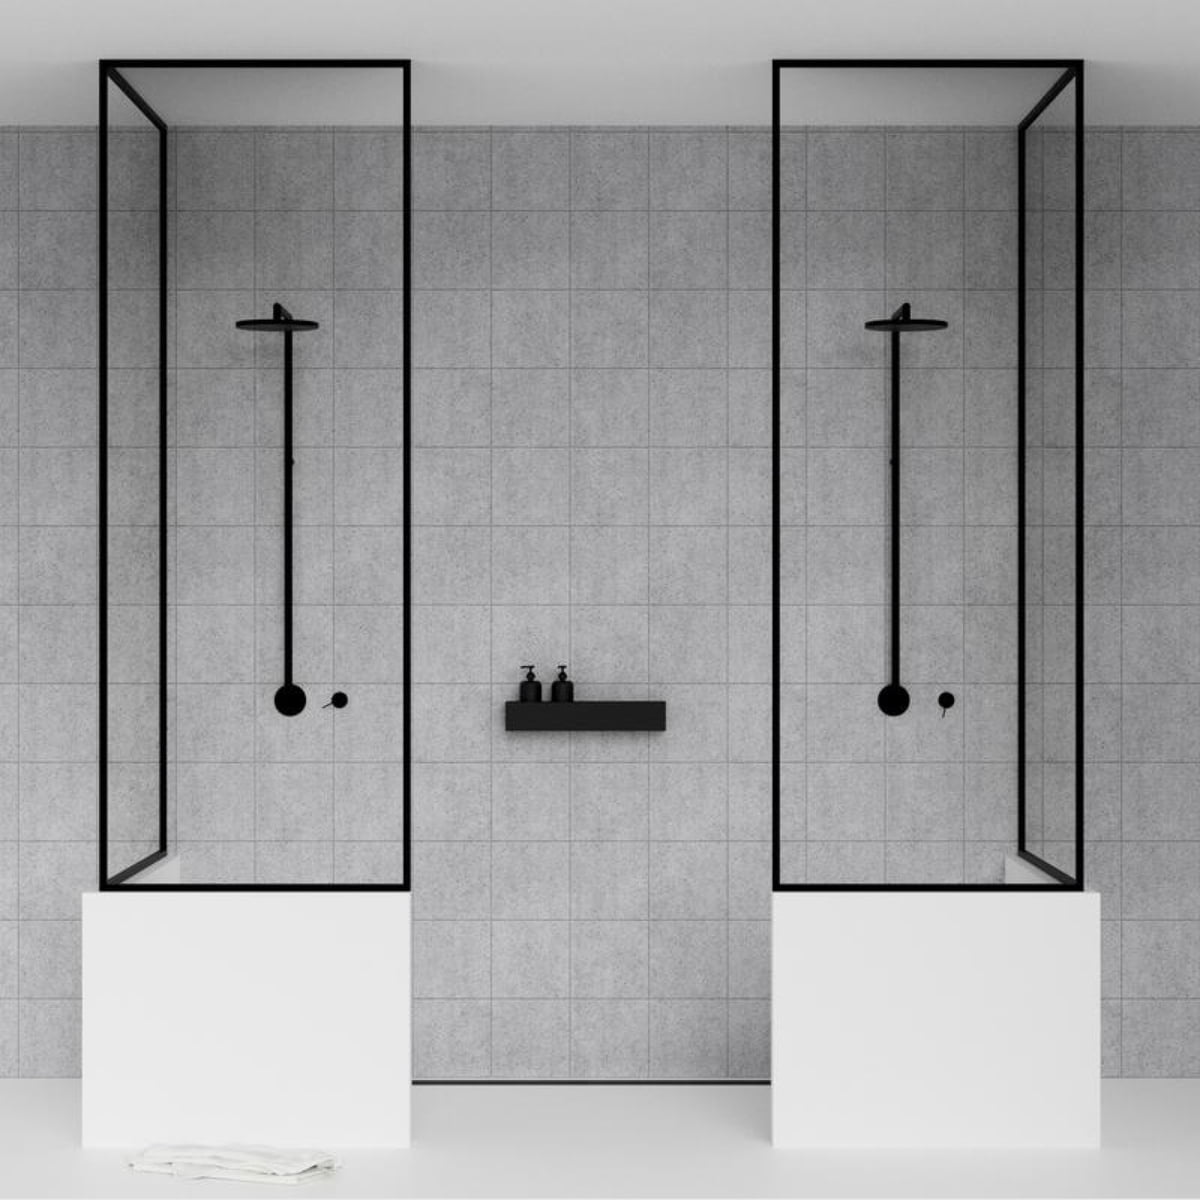 Frame Full Black, Shower Basket / Bathroom Shelf 25cm Black